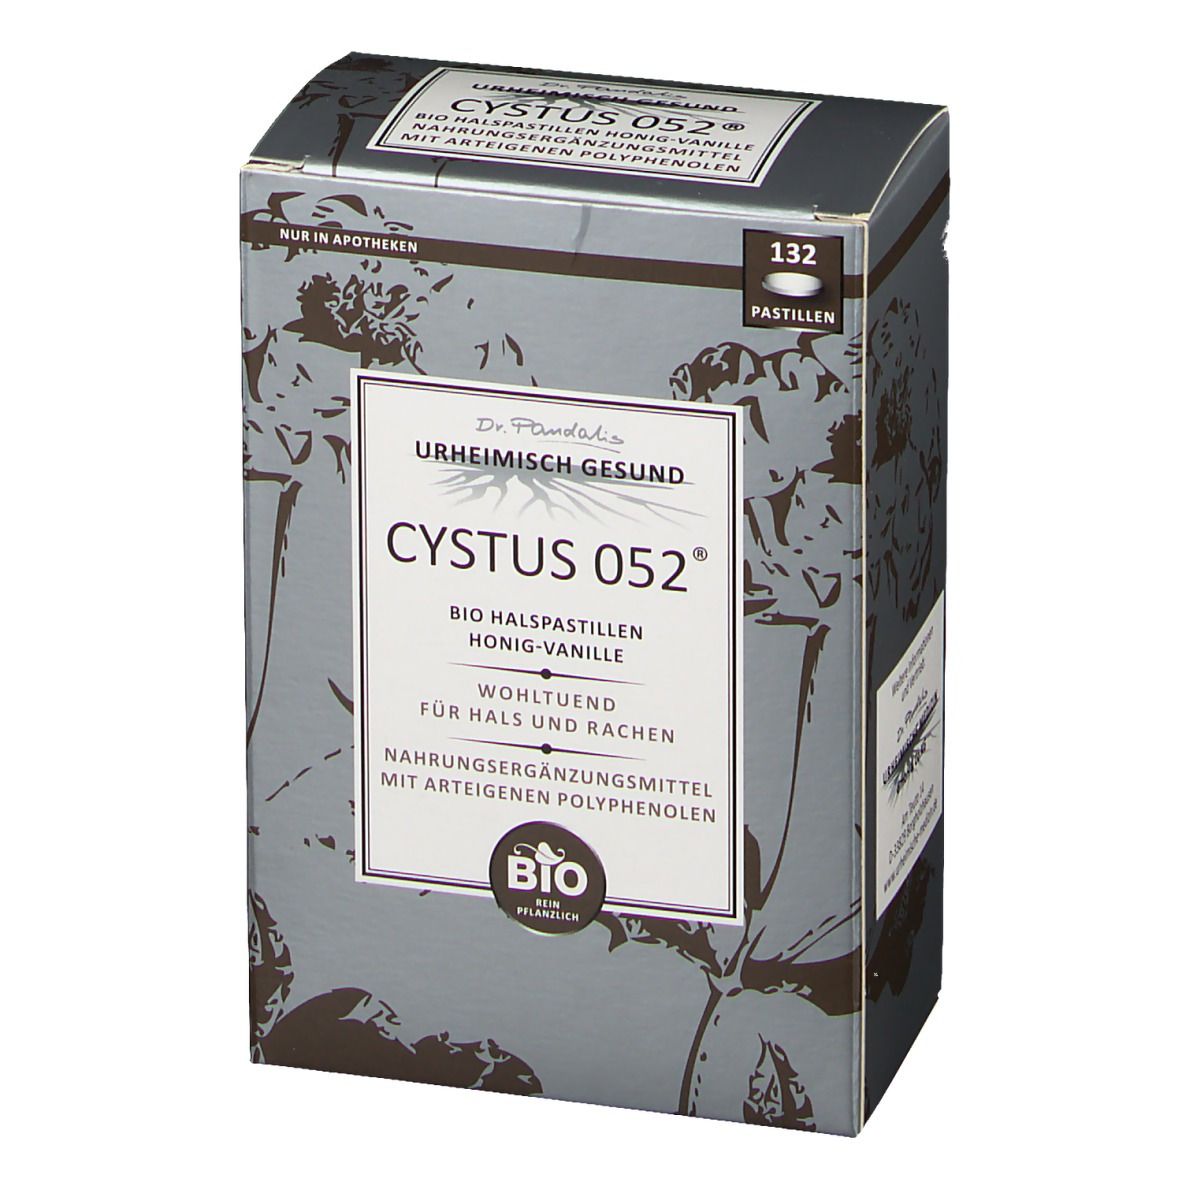 Dr. Pandalis Cystus 052® Bio Halspastillen – Honig-Vanille